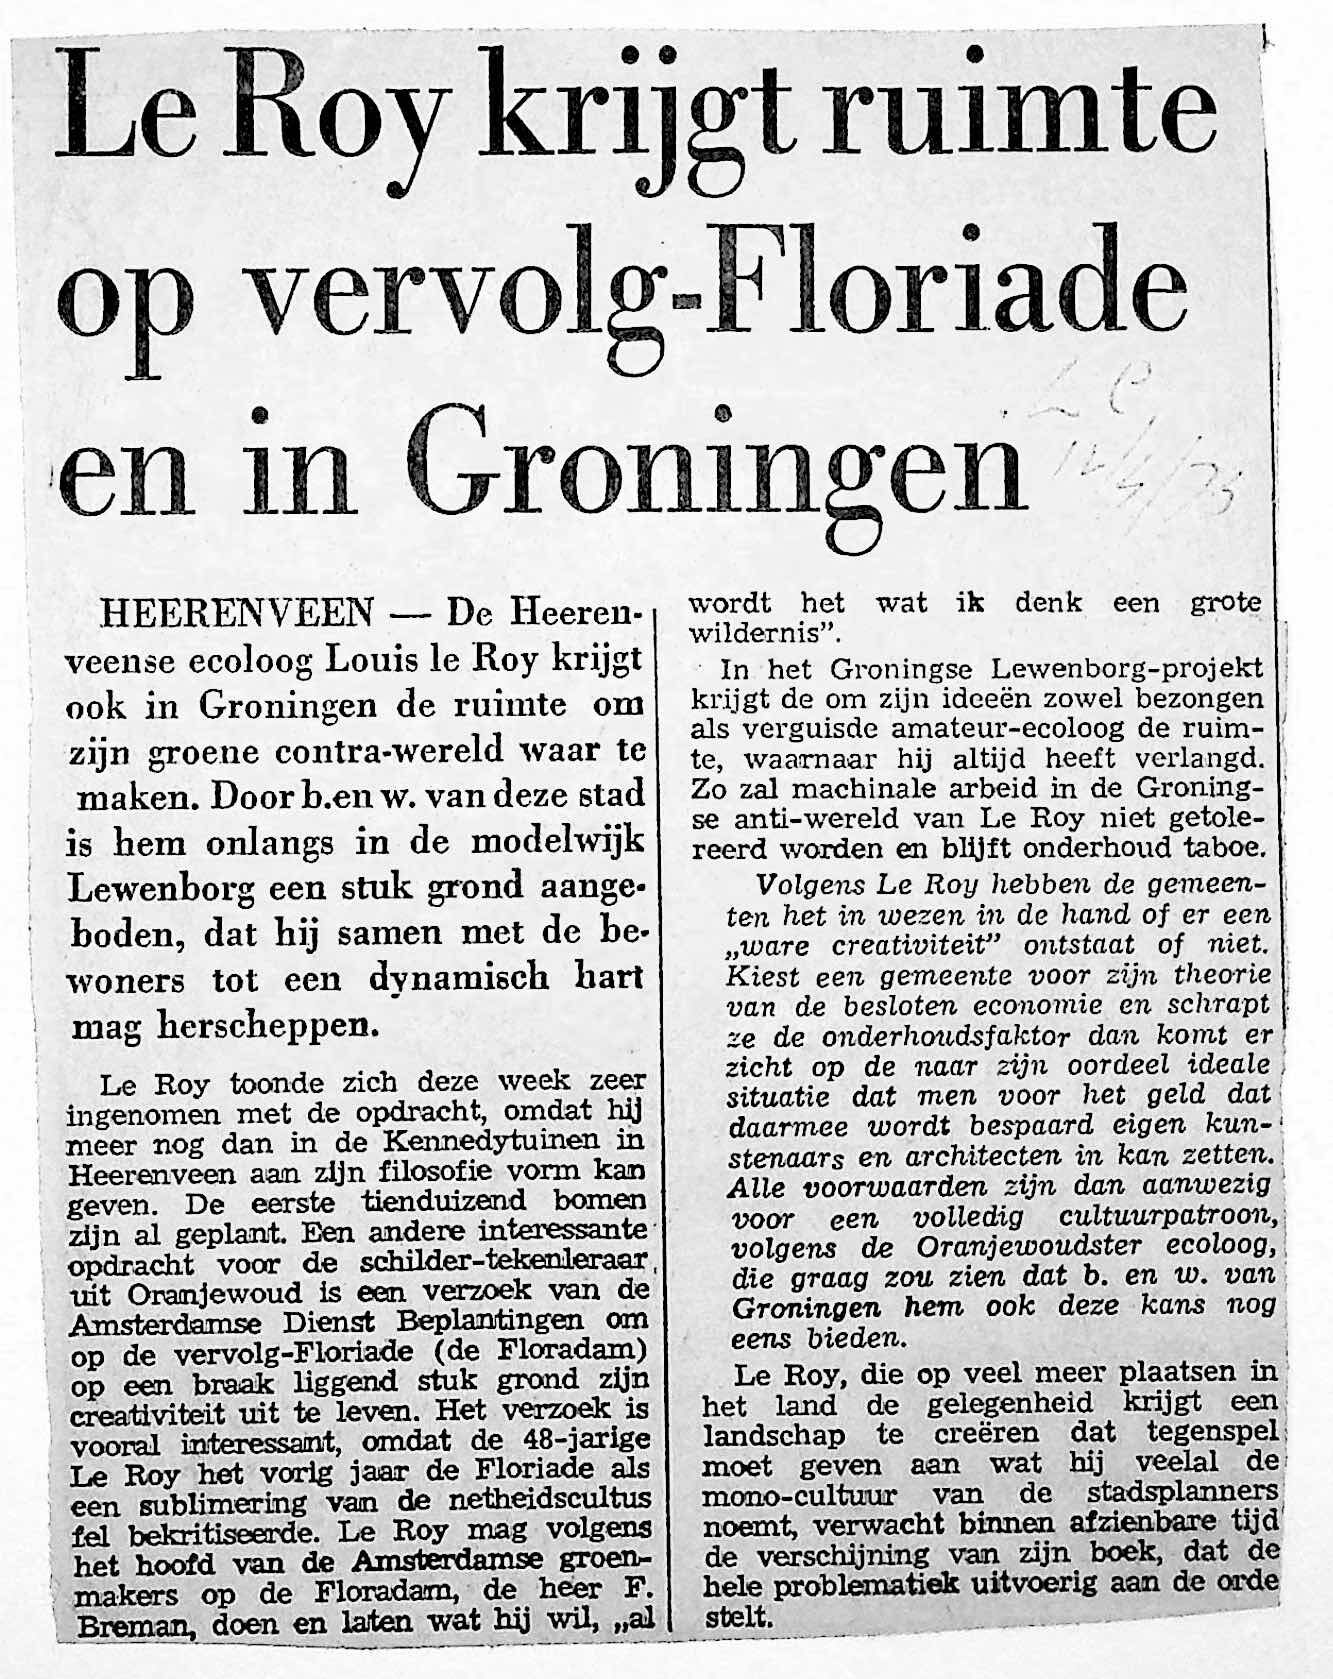 19730412_Le_Roy_krijgt_ruimte_op_vervolg-Floriade_en_in_Groningen.jpg